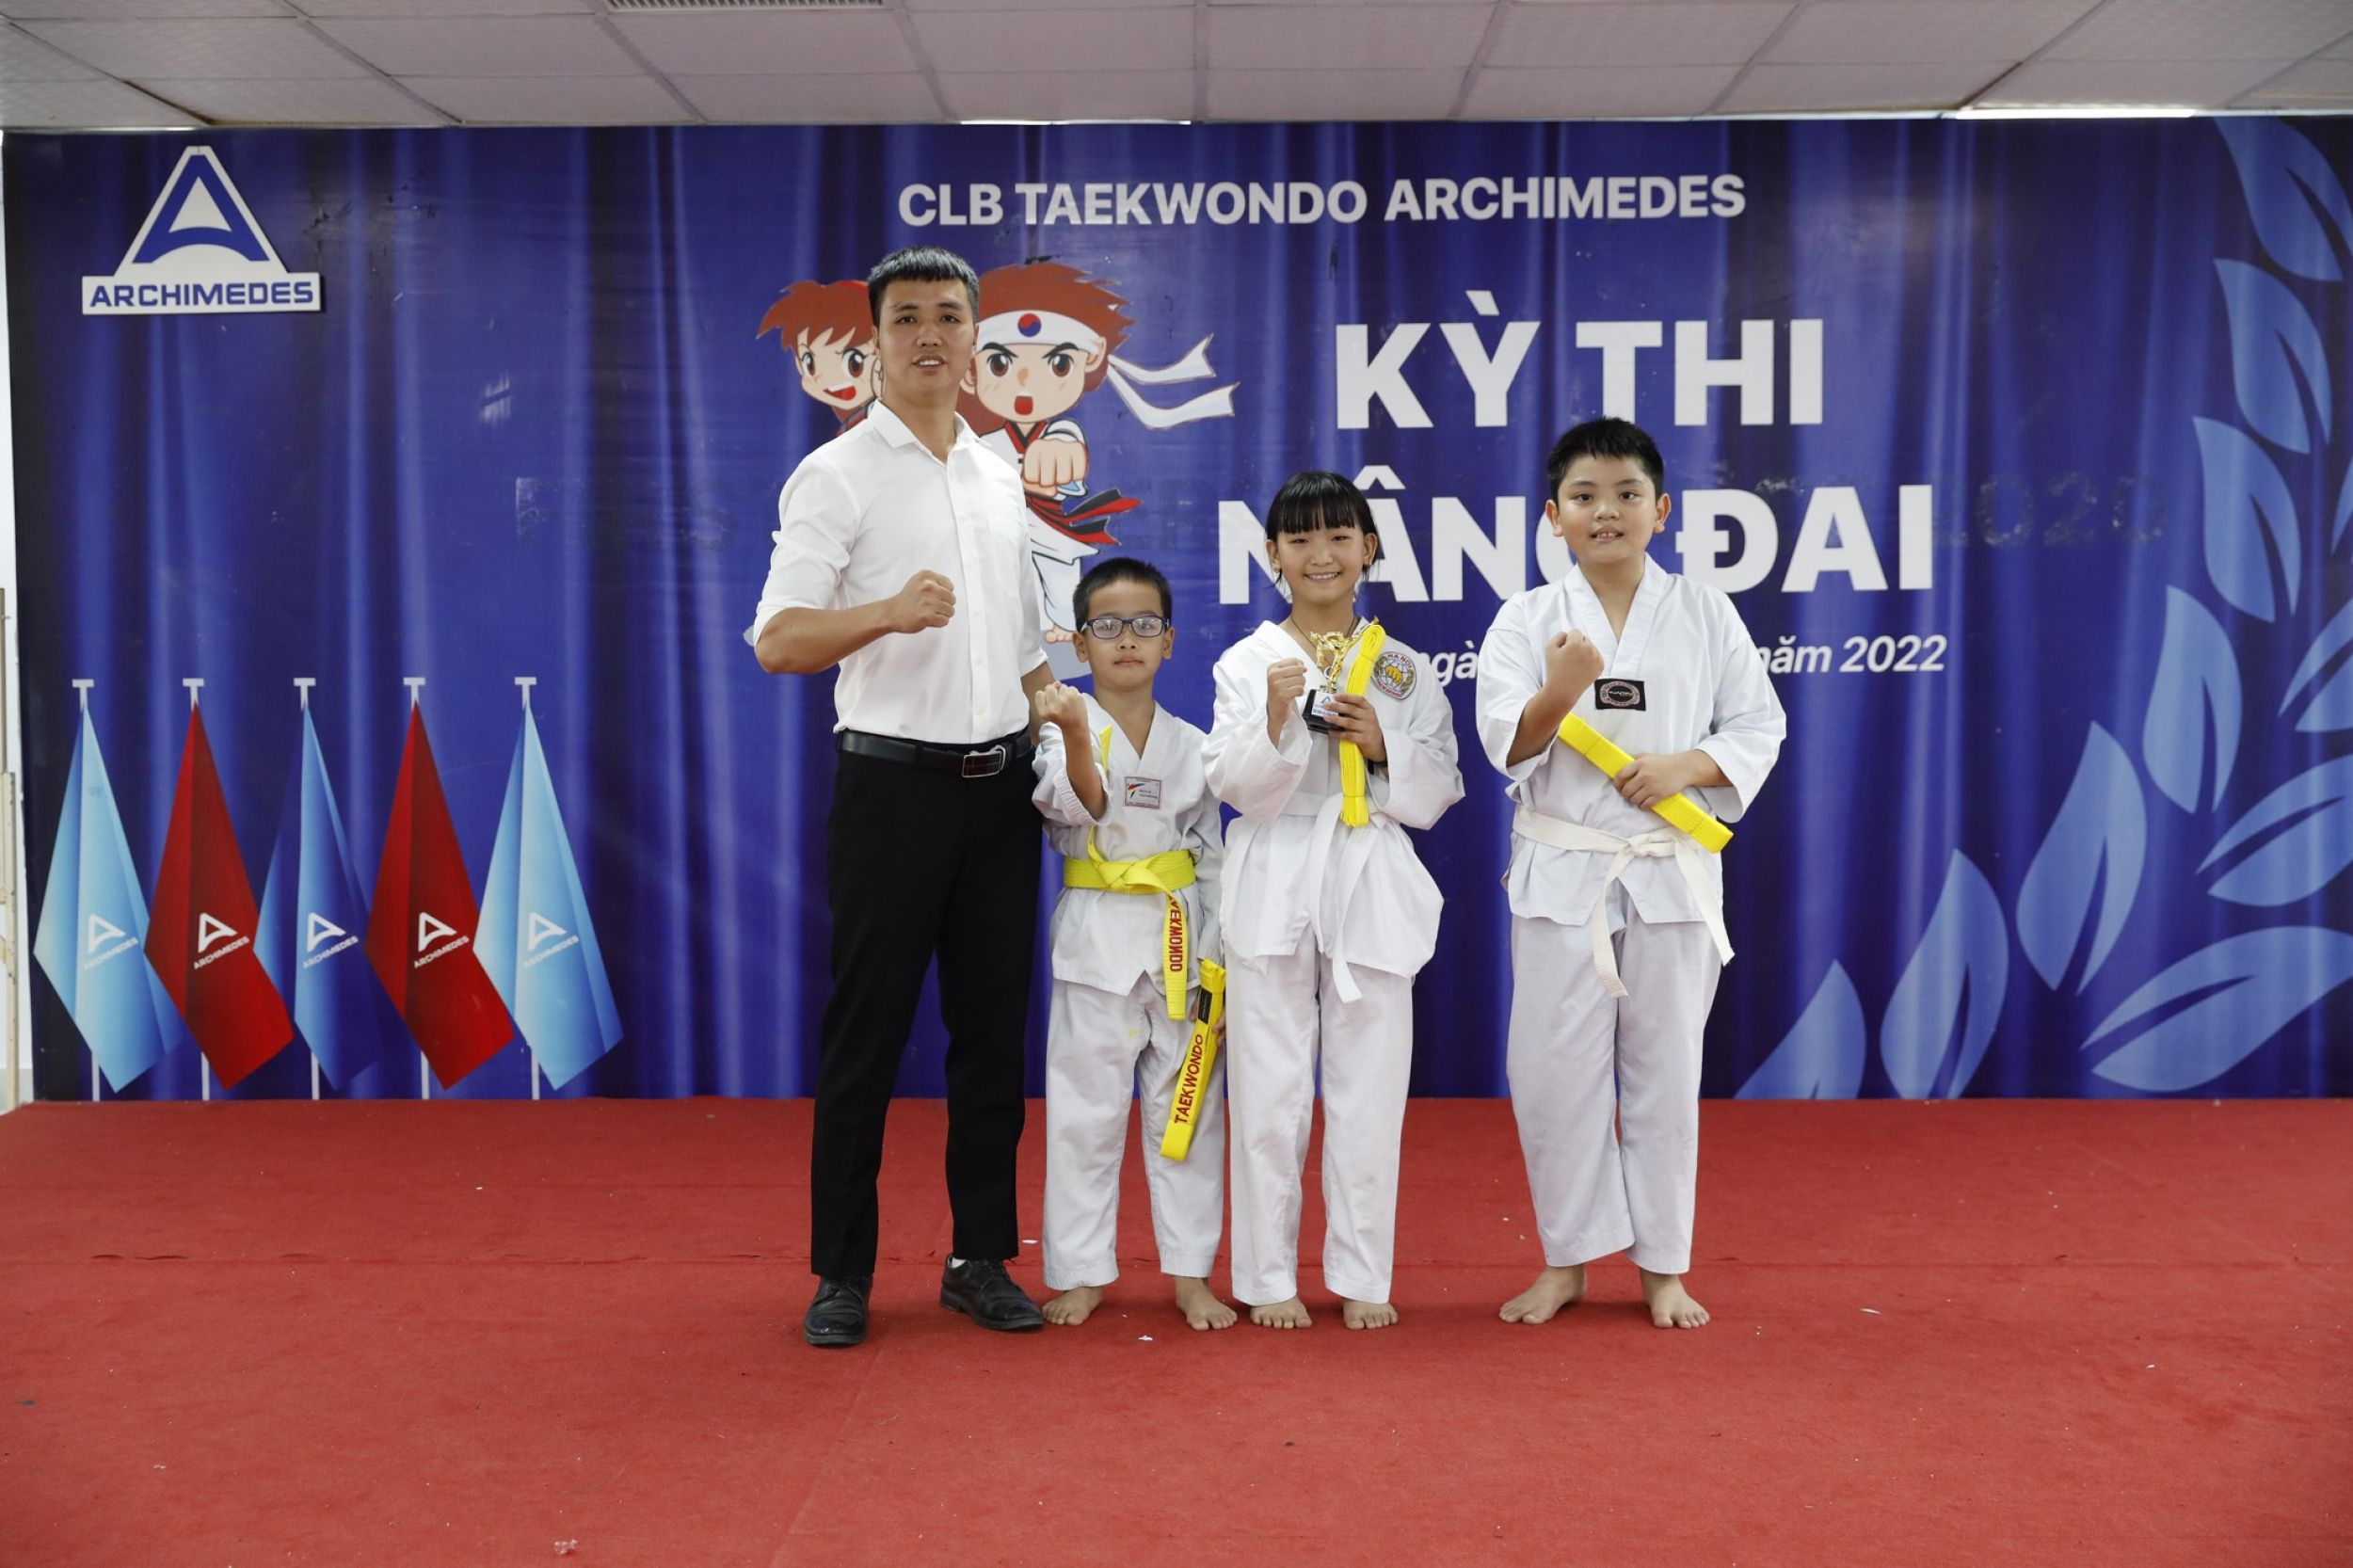 Hơn 80 võ sinh tham gia kỳ thi nâng đai tại CLB Taekwondo Archimedes